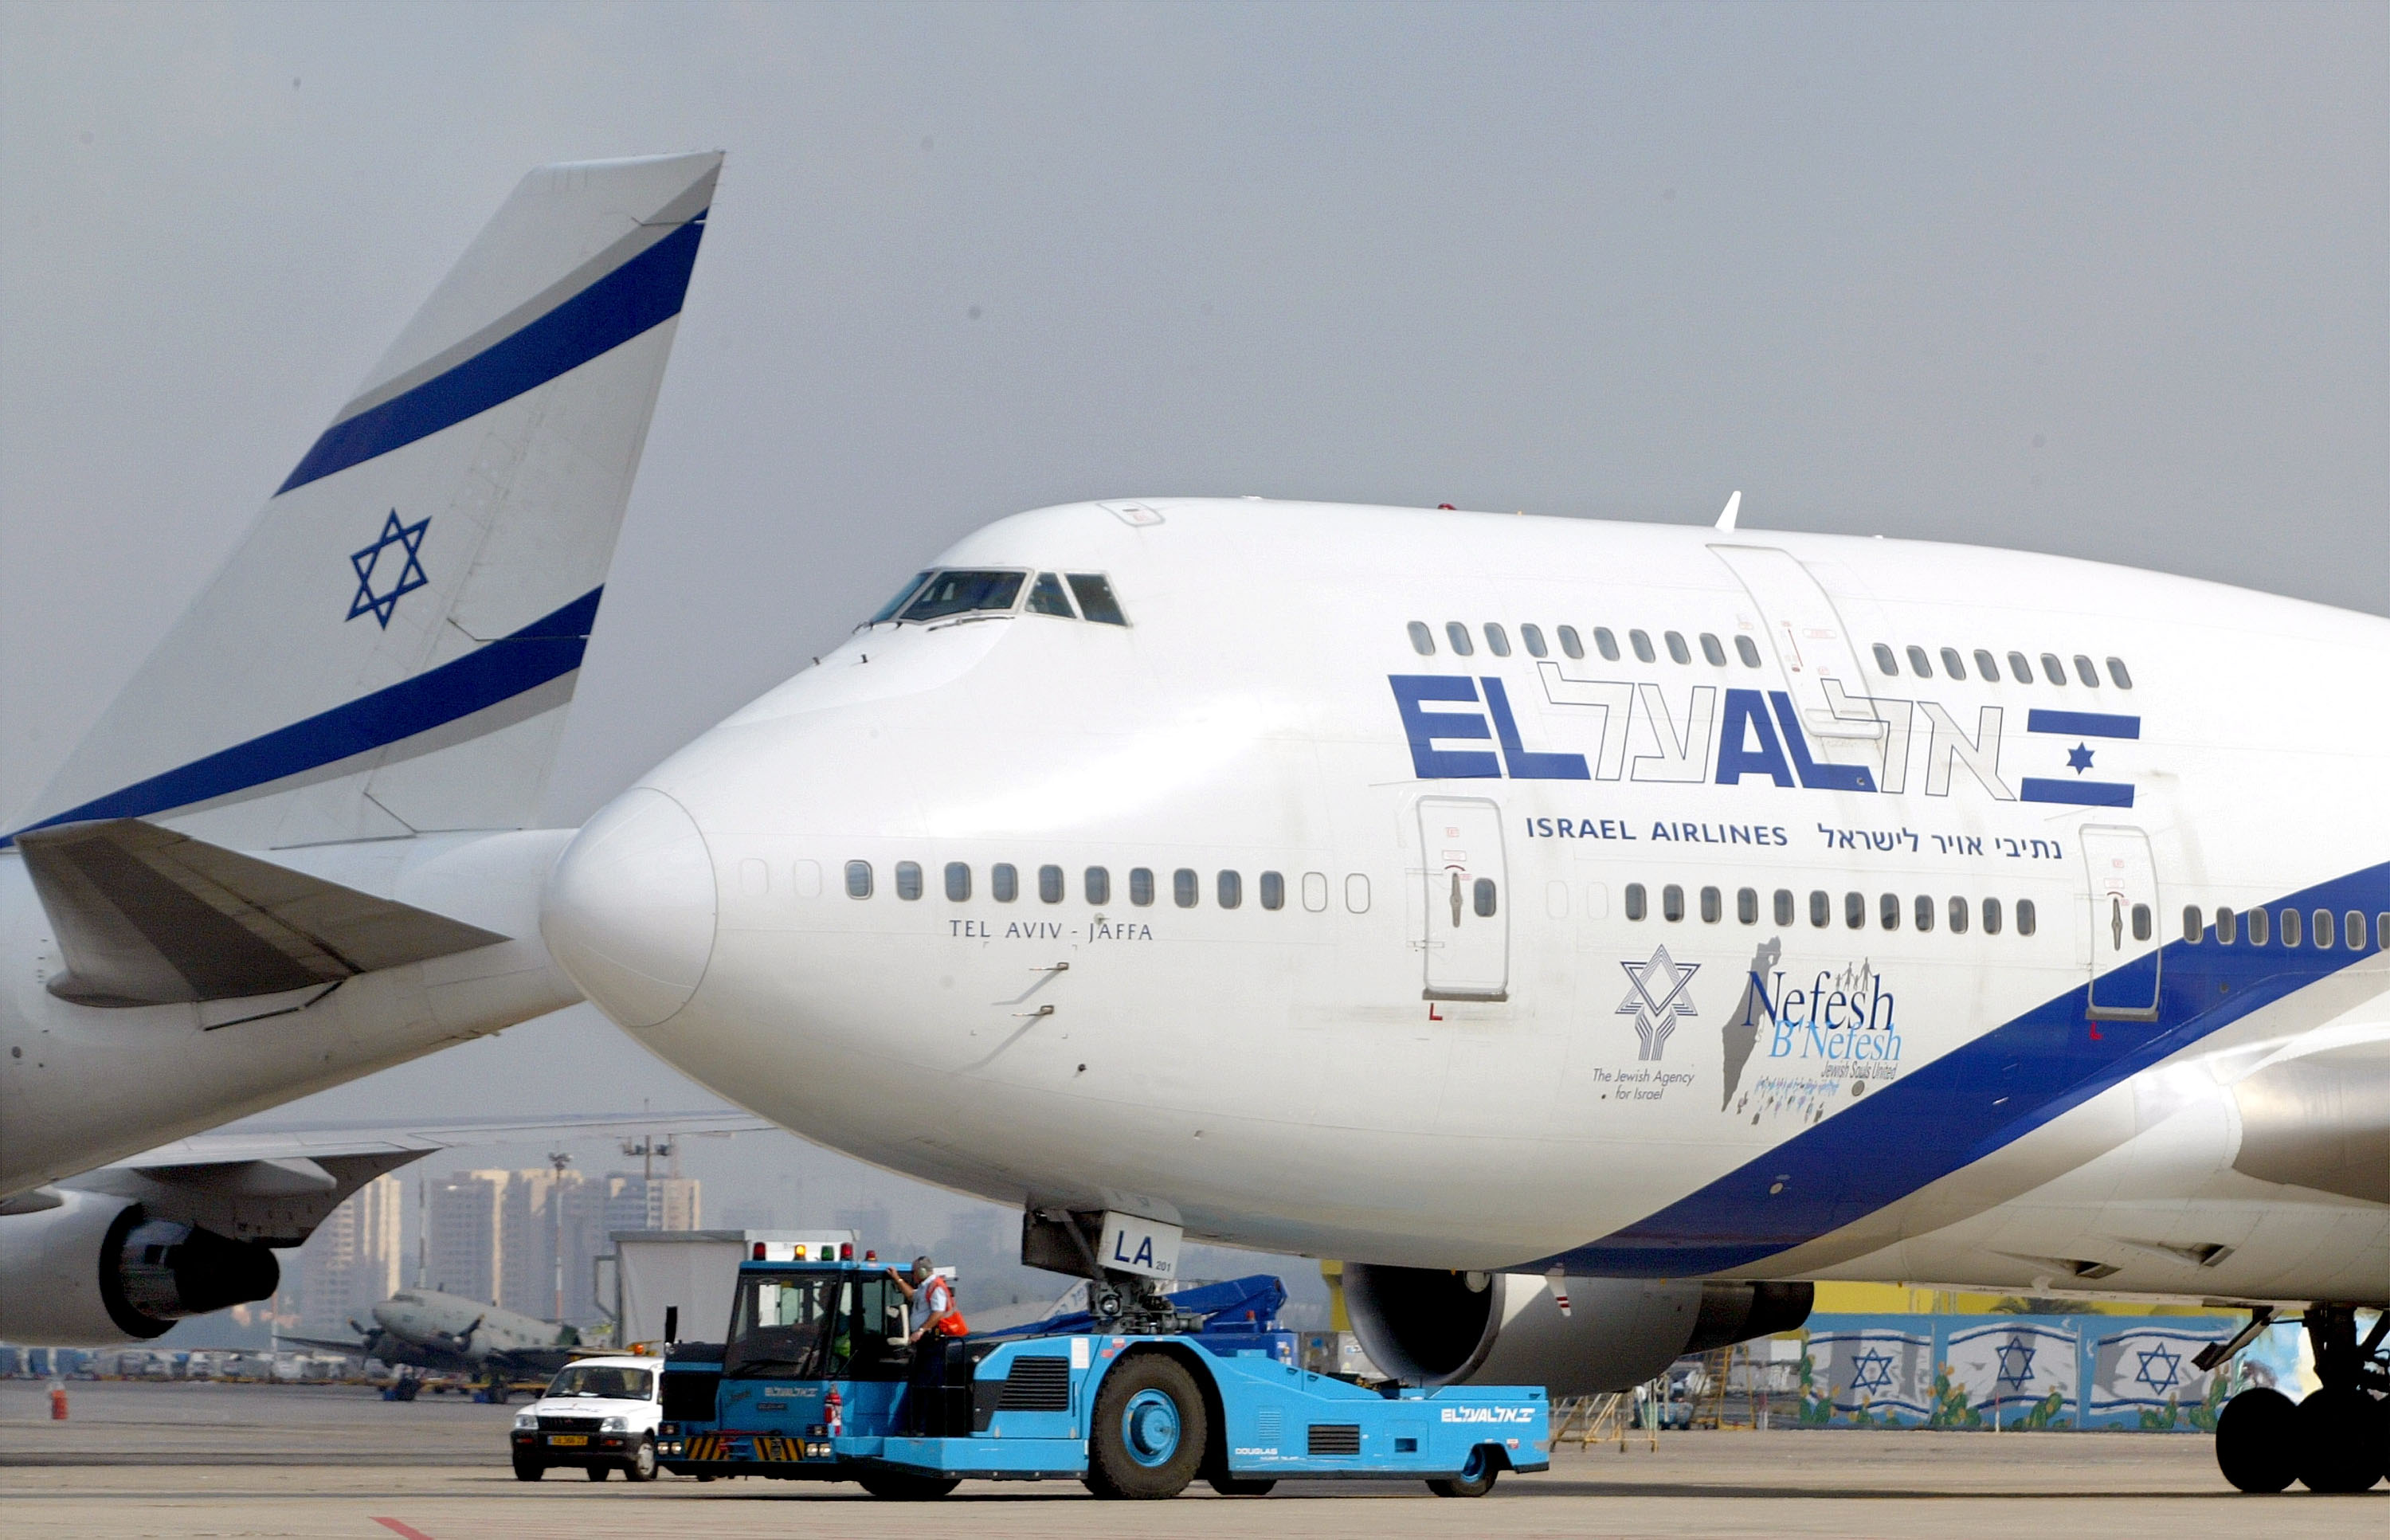 Самолеты эль аль. Авиакомпания Израиля Эль Аль. Боинг 747 авиакомпании Israel. El al Israel Airlines внутри. El al Israel Airlines салон.